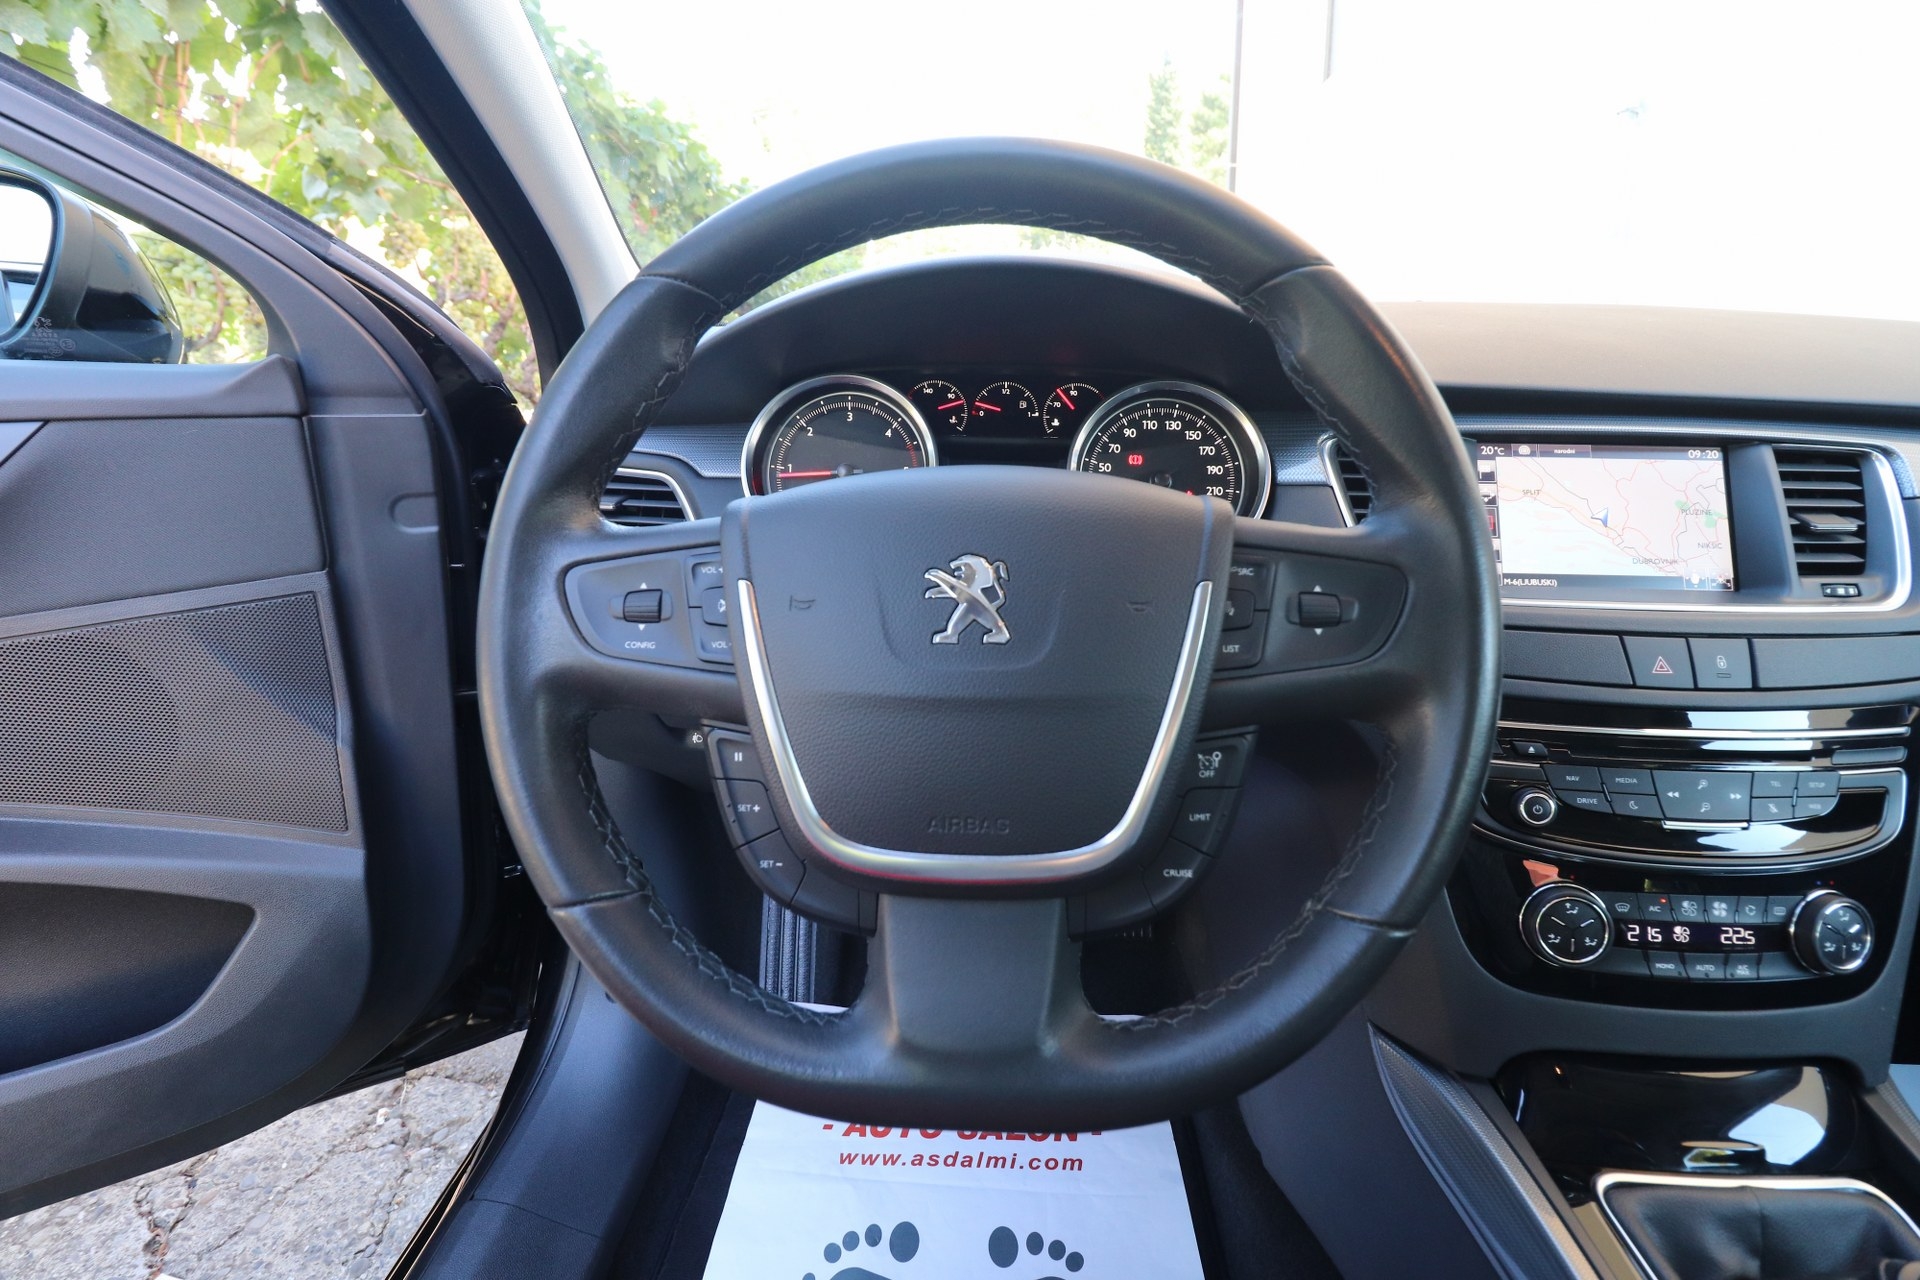 Peugeot 508 1.6 BlueHDI 120 KS Allure Sport FELINE EXCLUSIVE Navigacija 2xParktr.Park Assist MAX-VOLL -New Modell 2018-FACELIFT